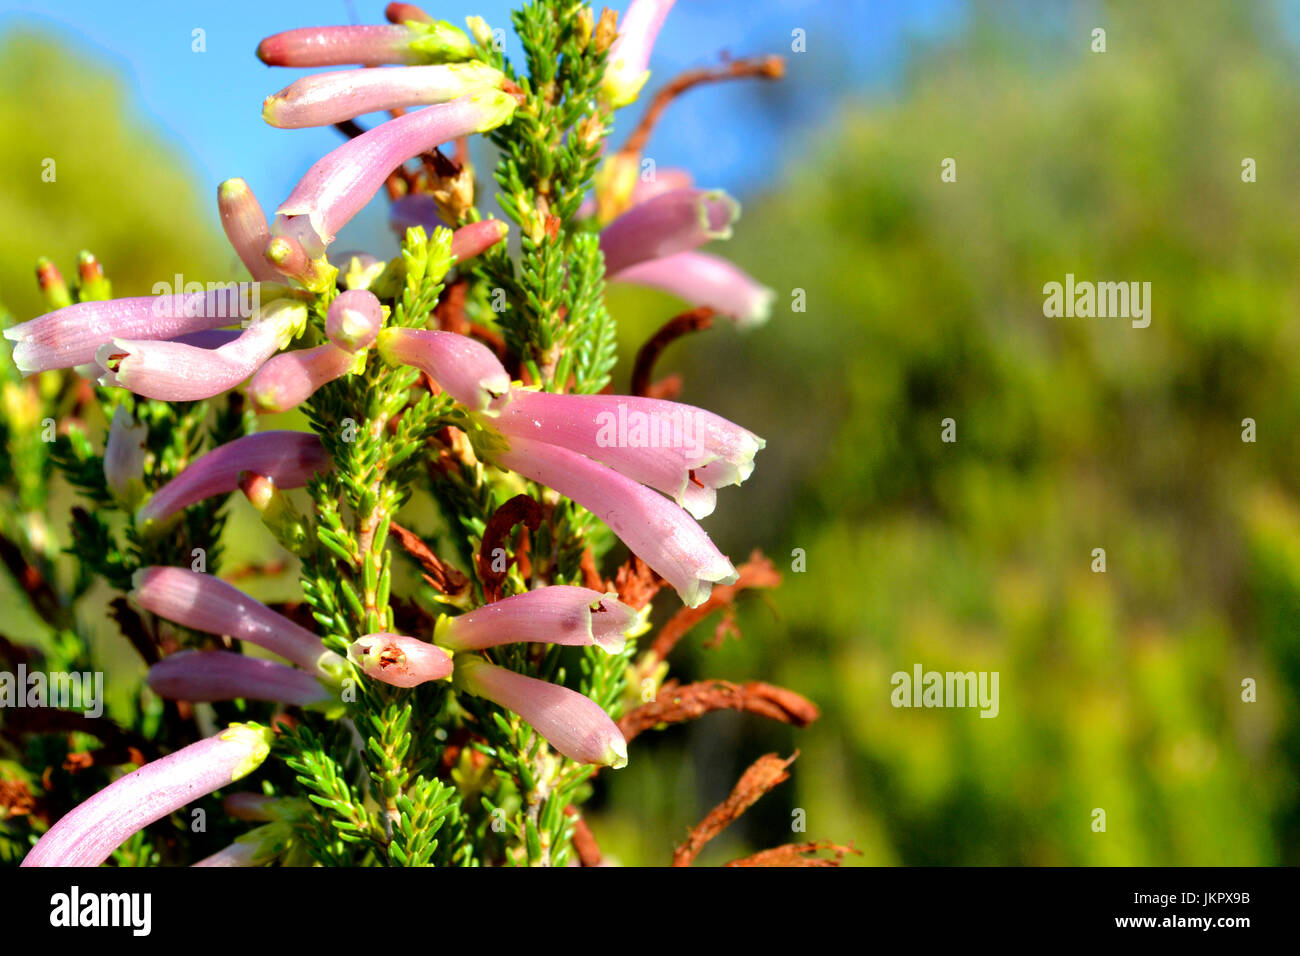 Erica scolorire vicino a valle dei fiori Foto Stock